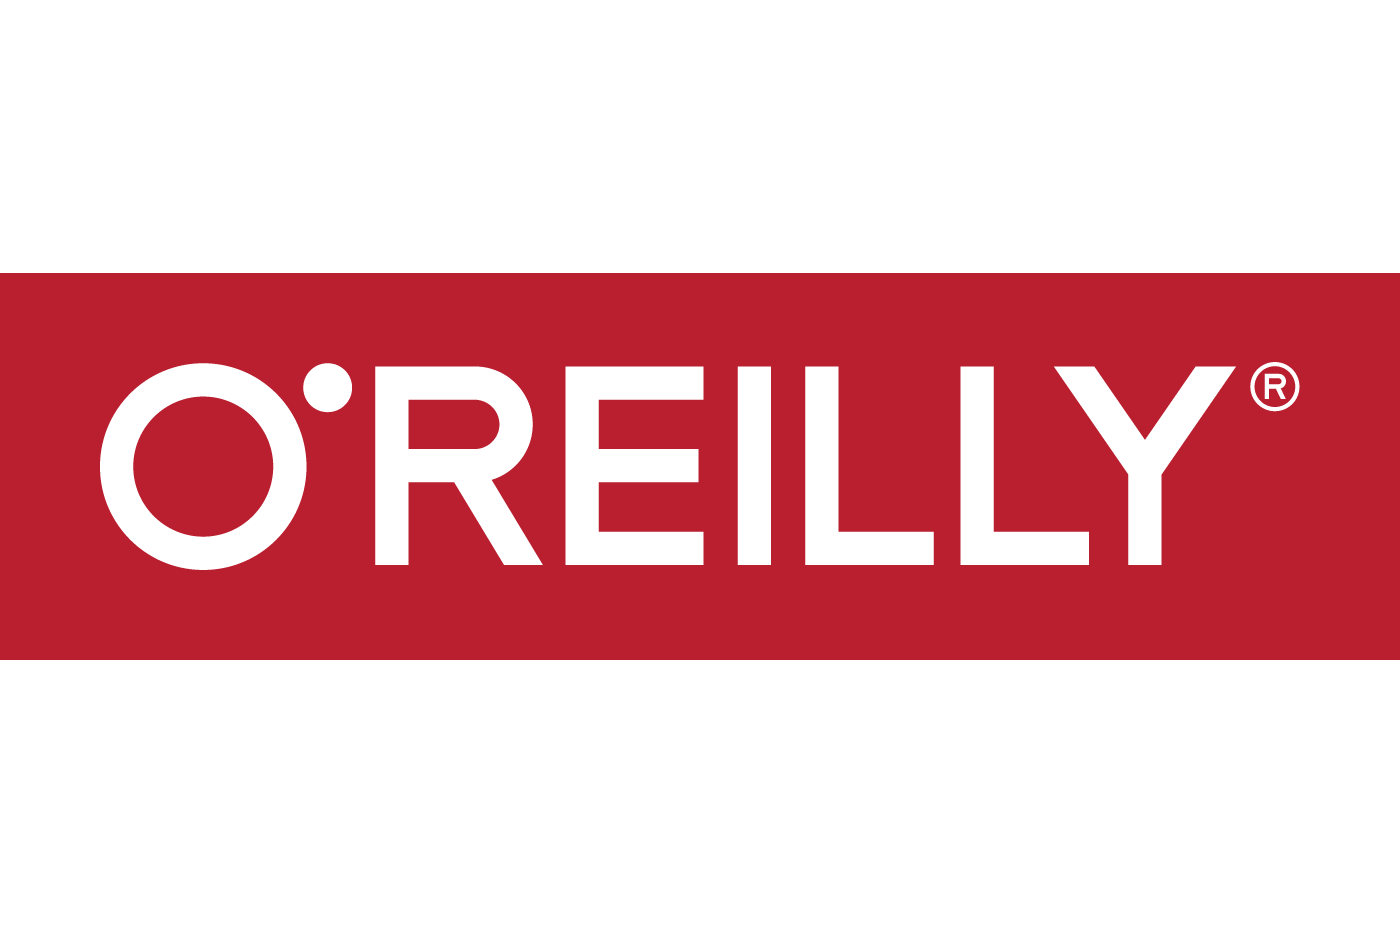 O'Reilly Logo - O reilly Logos